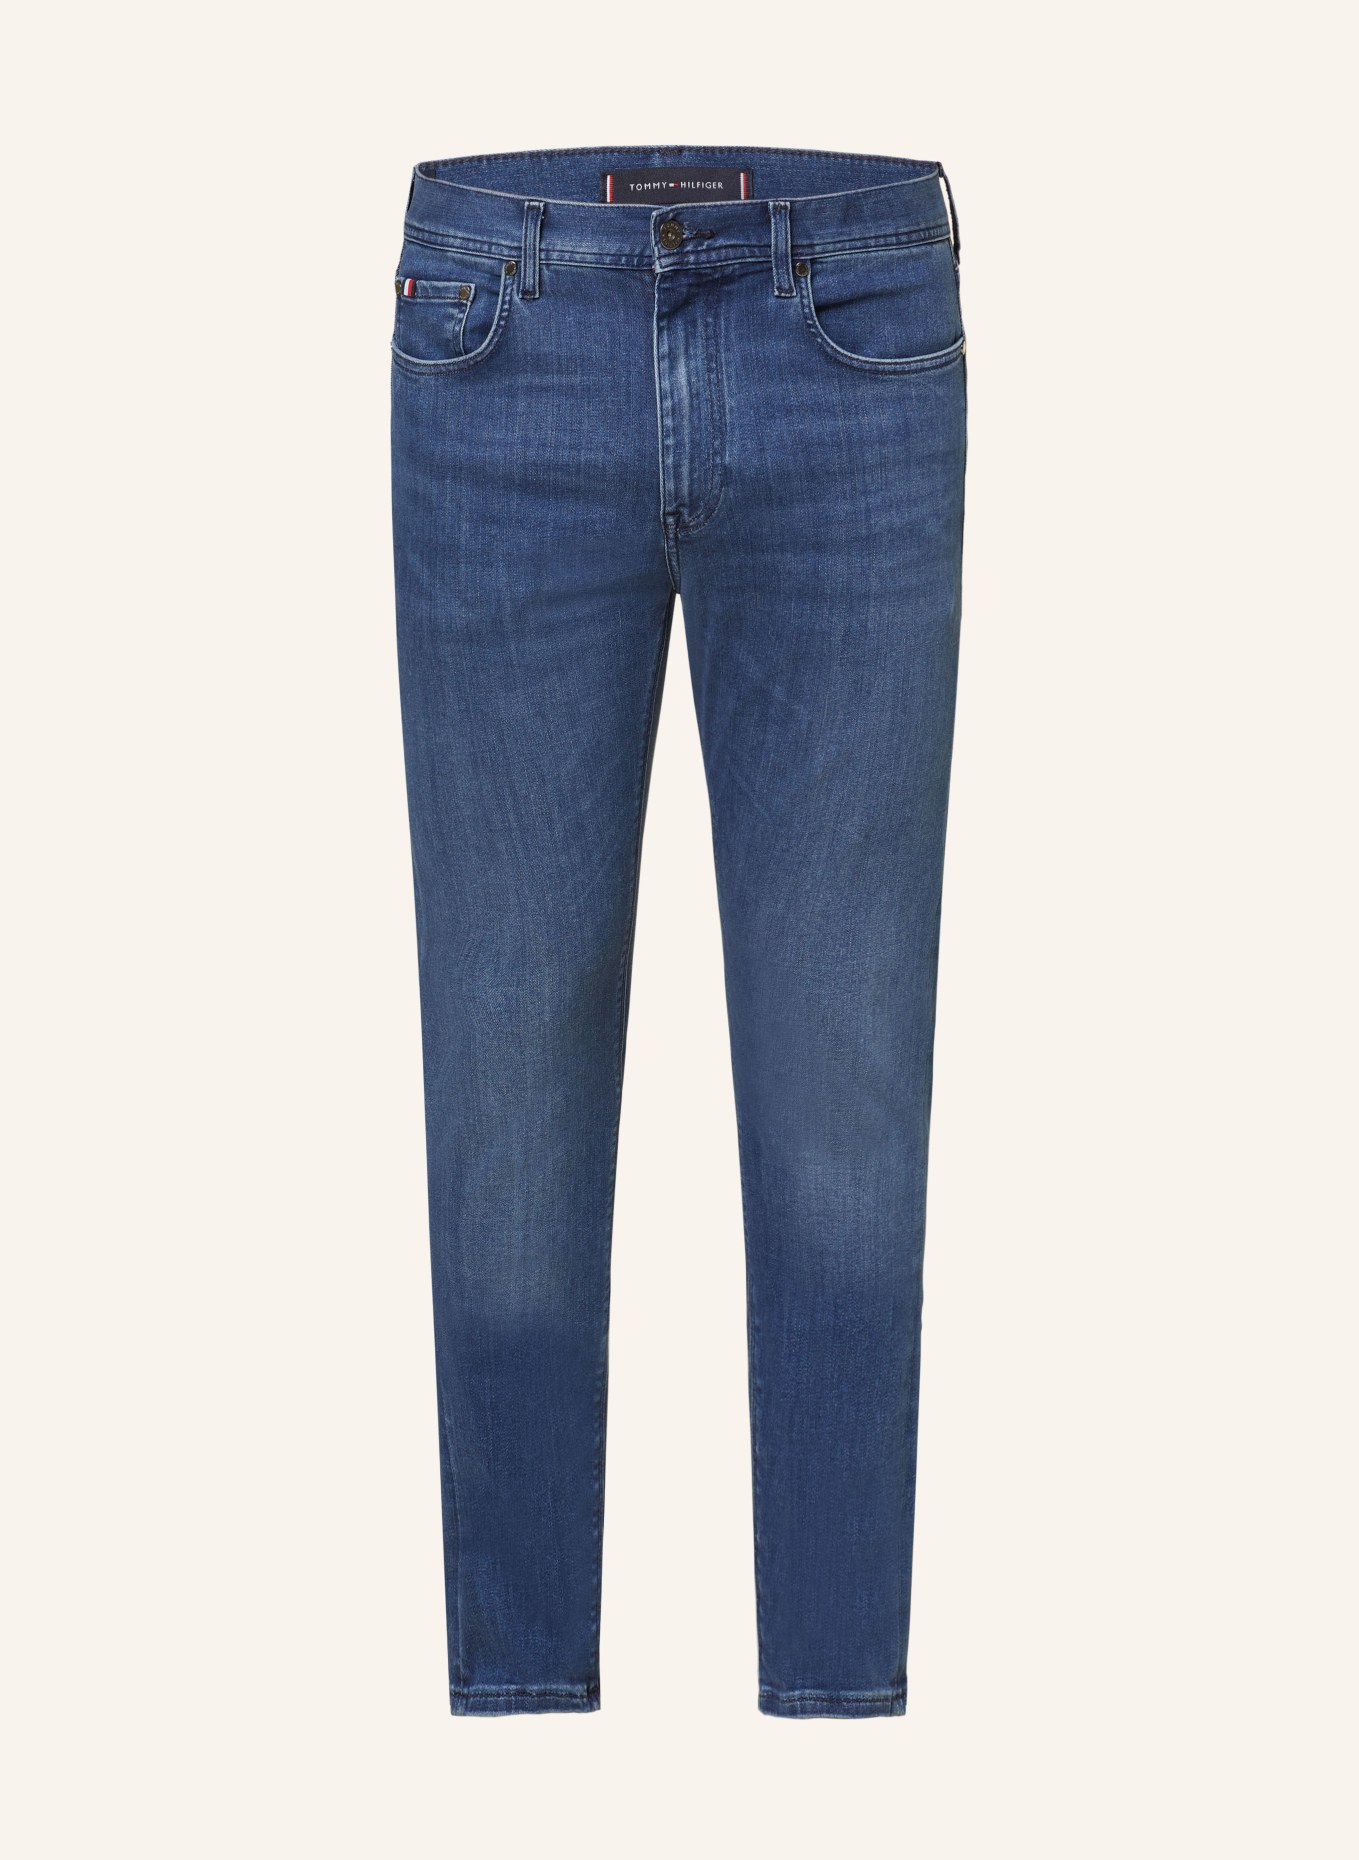 TOMMY HILFIGER Jeans BLEECKER Slim Fit, Farbe: BLAU (Bild 1)